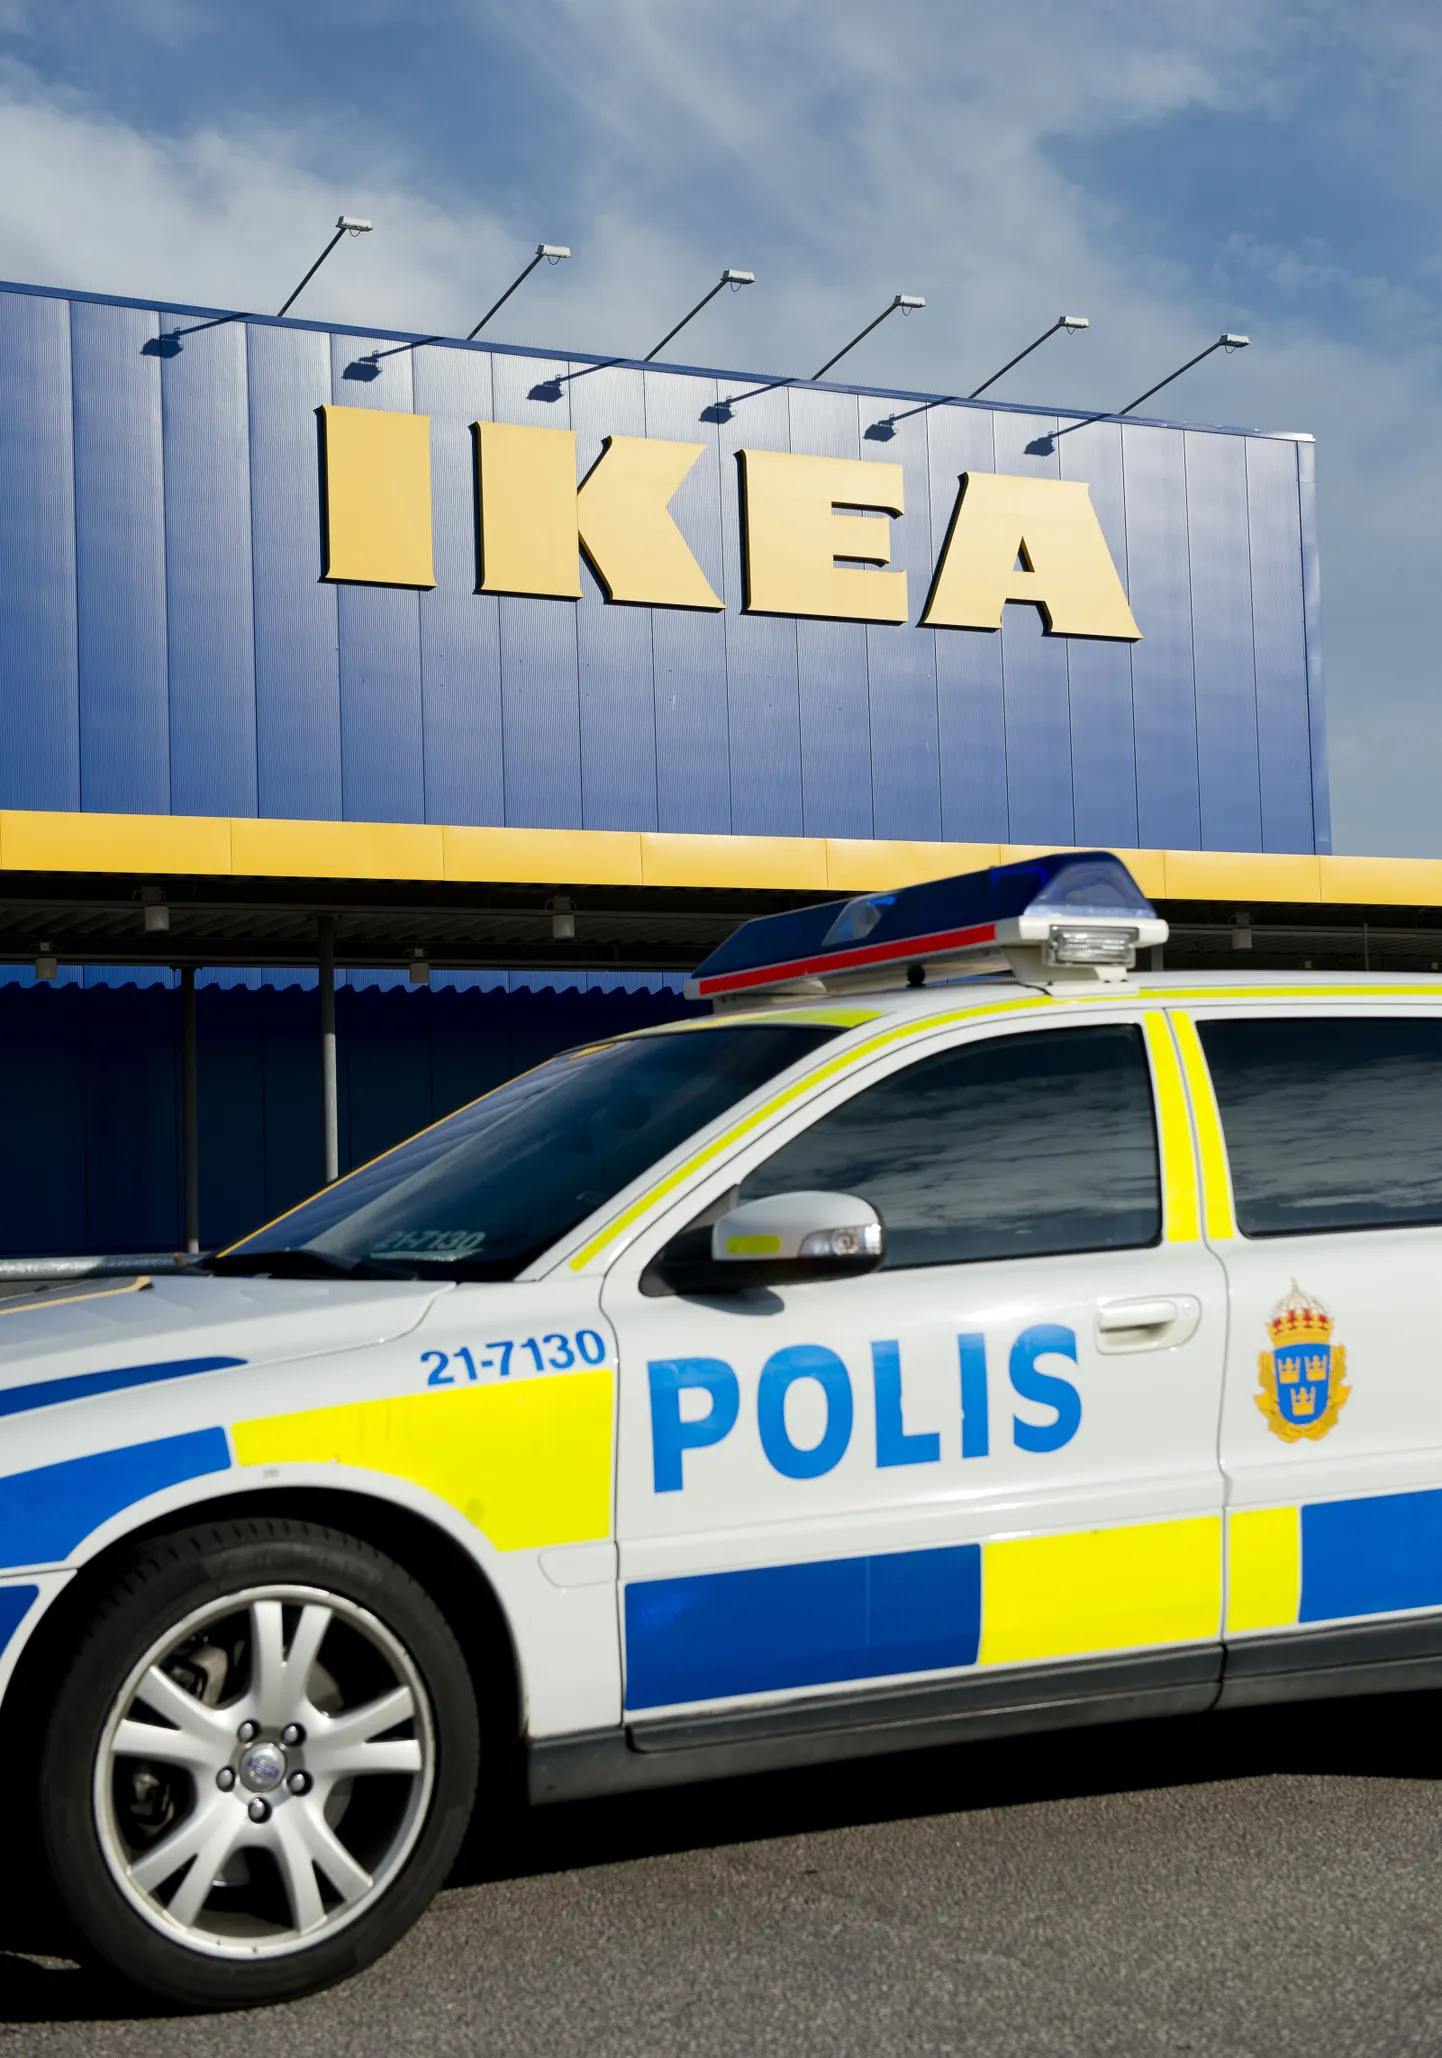 Продажа ножей в магазине IKEA в шведском городе Вестерос, где было совершено нападение на посетителей, временно приостановлена.